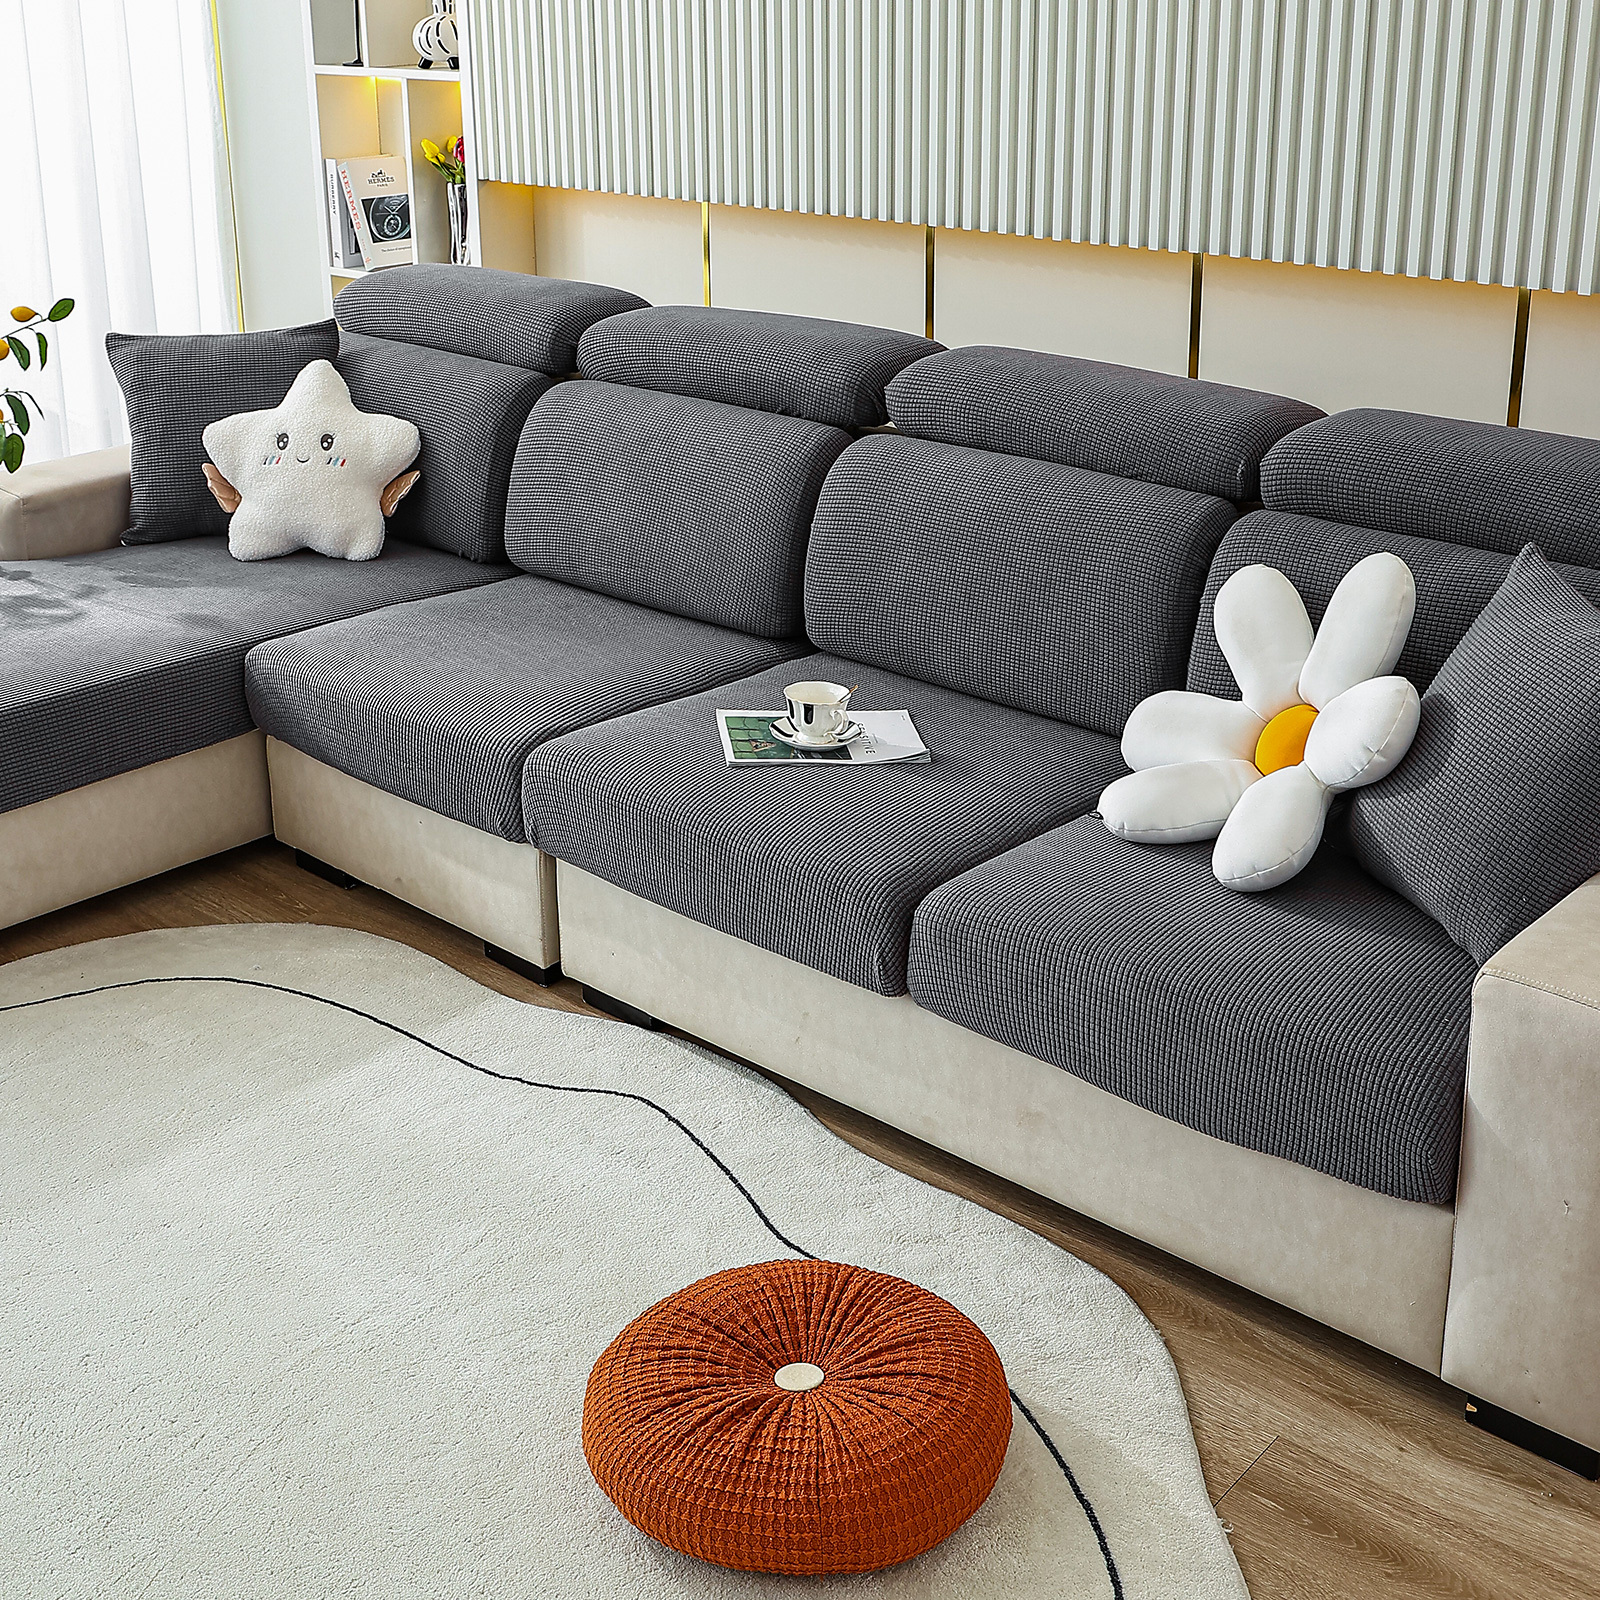 Cuscino da divano: un tocco di stile - AVECASA